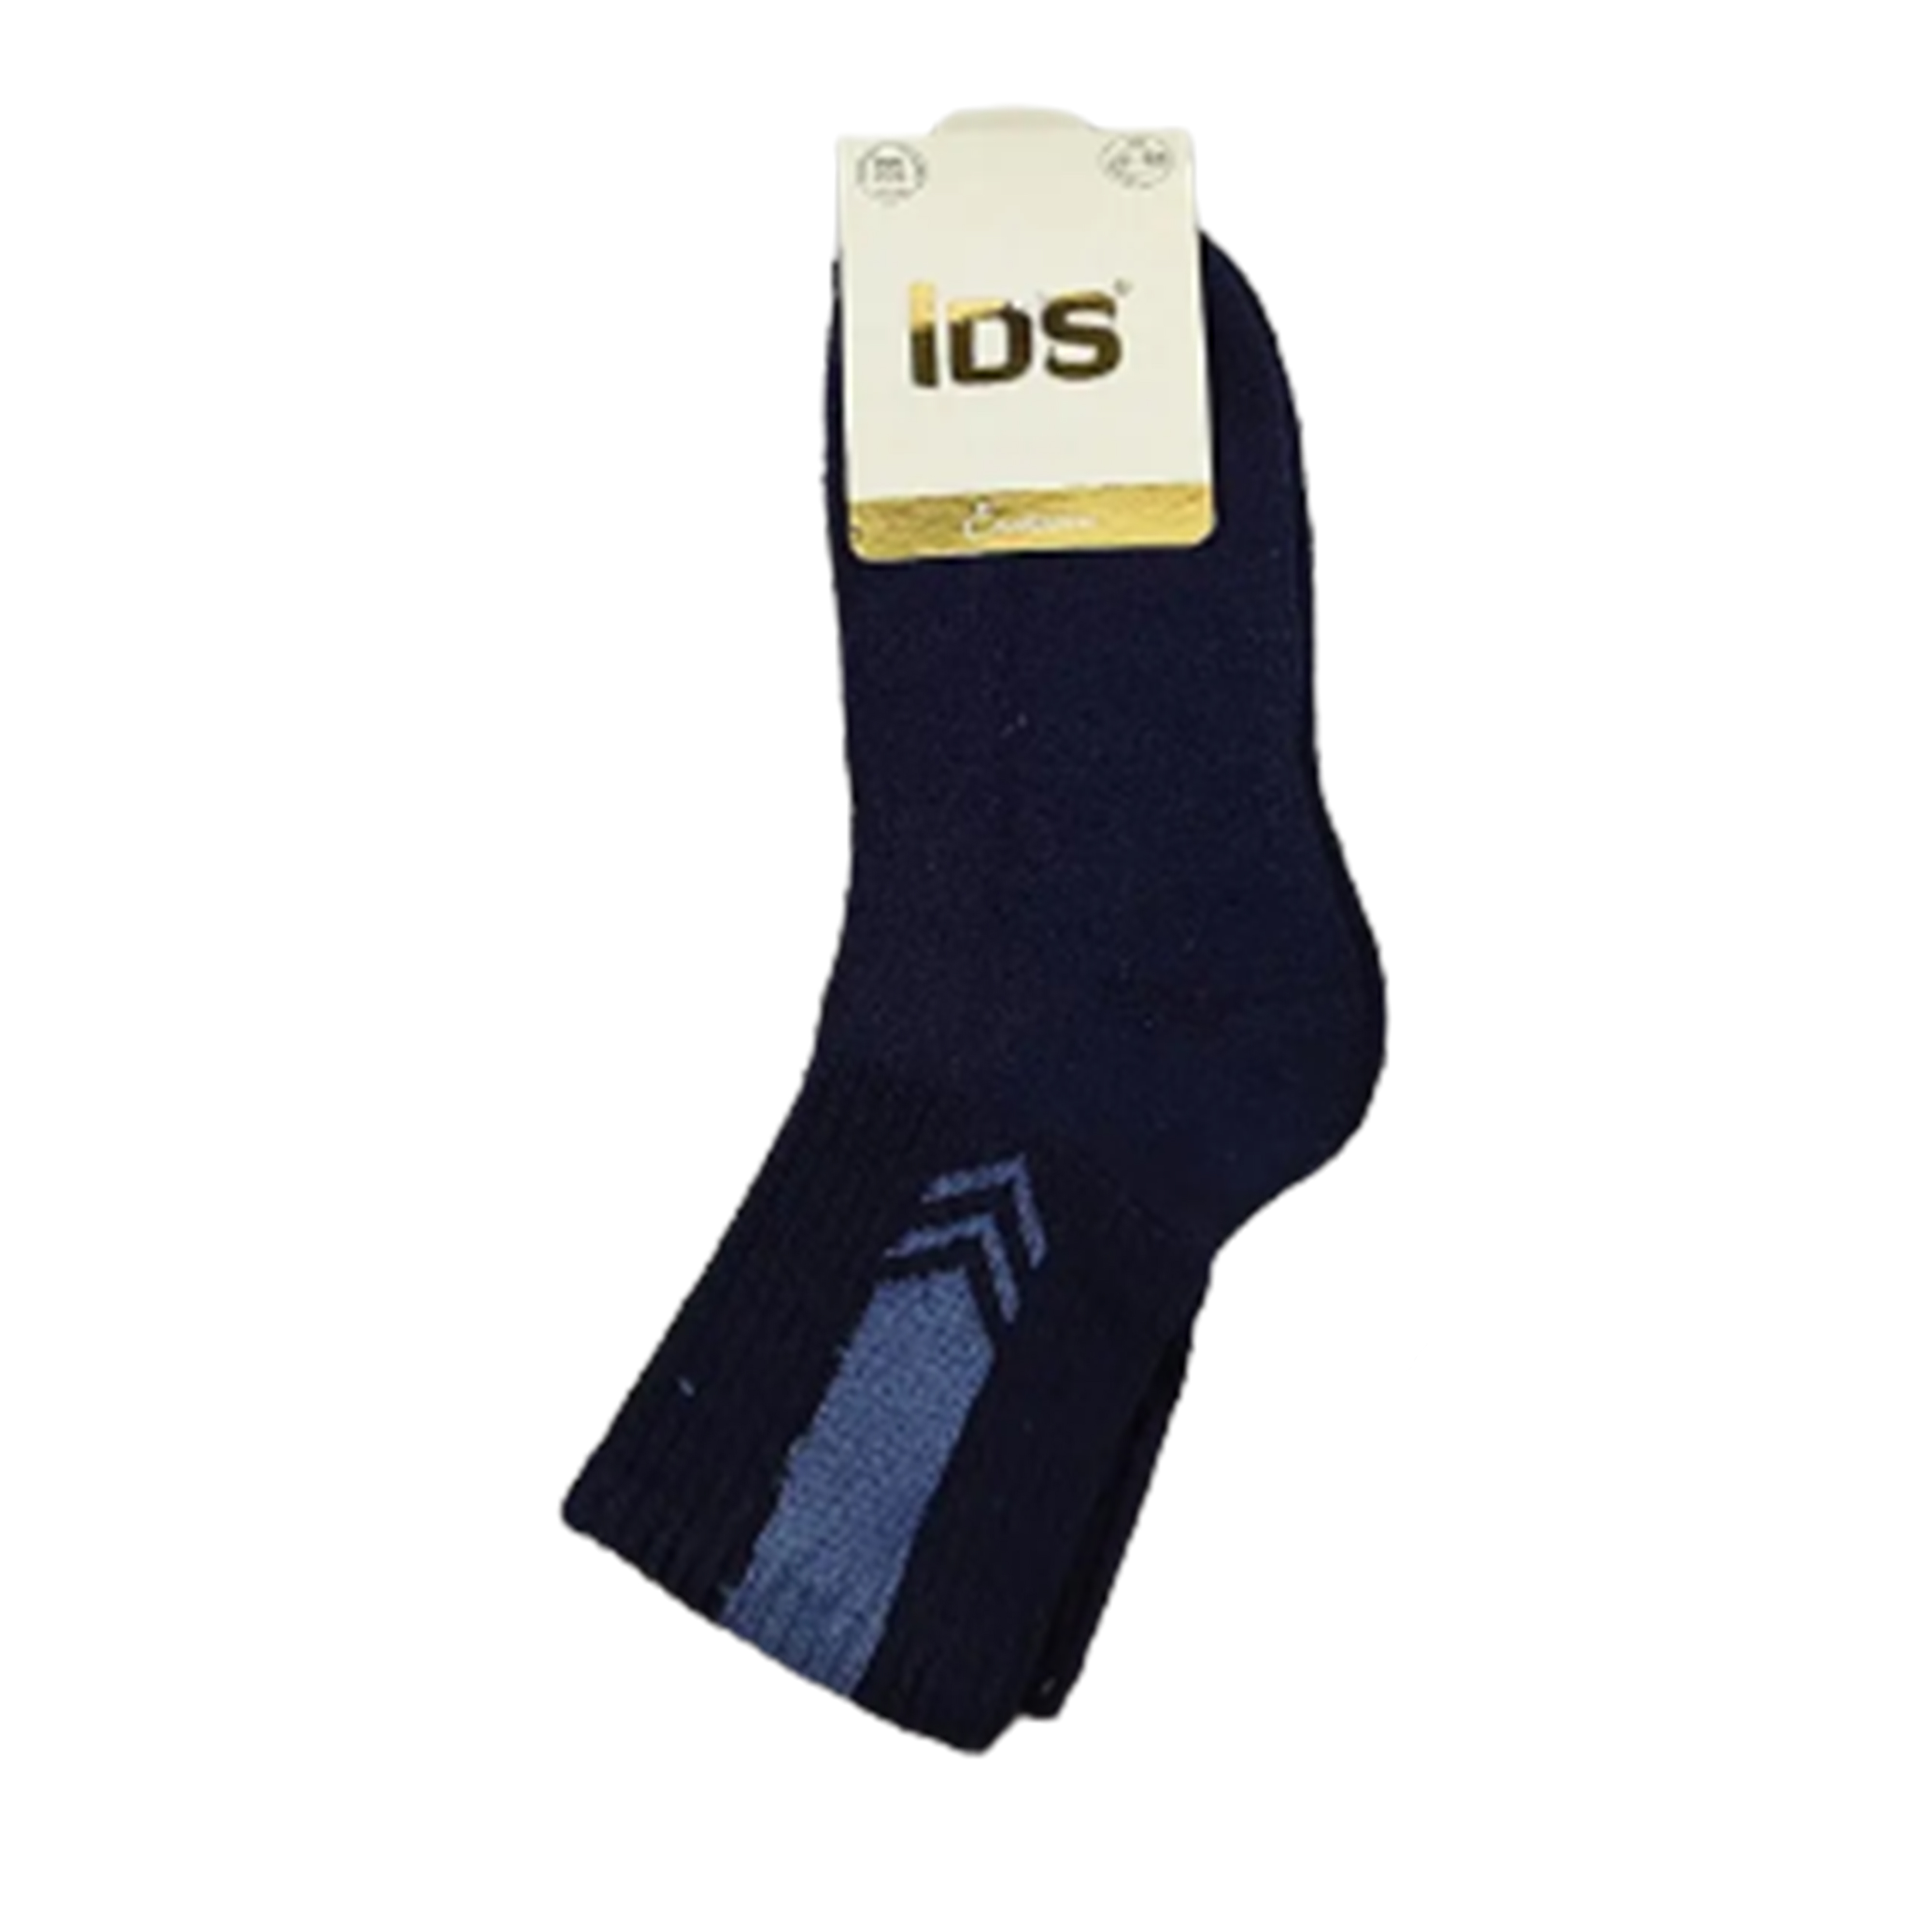 Шкарпетки TM IDS 0022139 махрові, сині, р. 5-6 років
 large popup